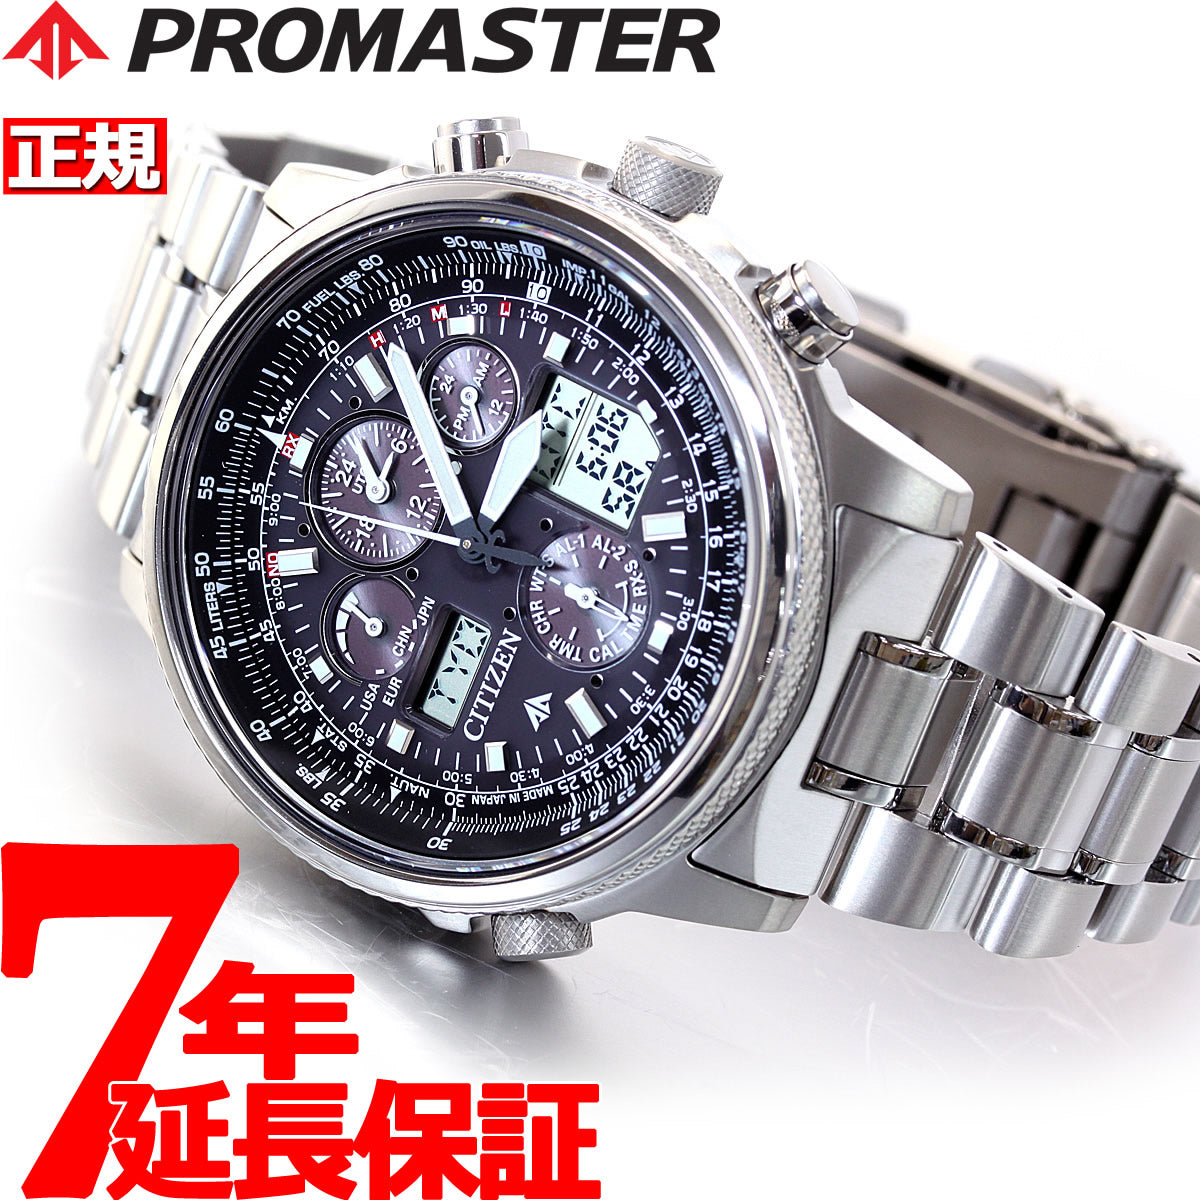 シチズン CITIZEN PROMASTER 腕時計 メンズ PMV65-2271 プロマスター エコ・ドライブ電波 液晶/ブラックxシルバー アナログ表示